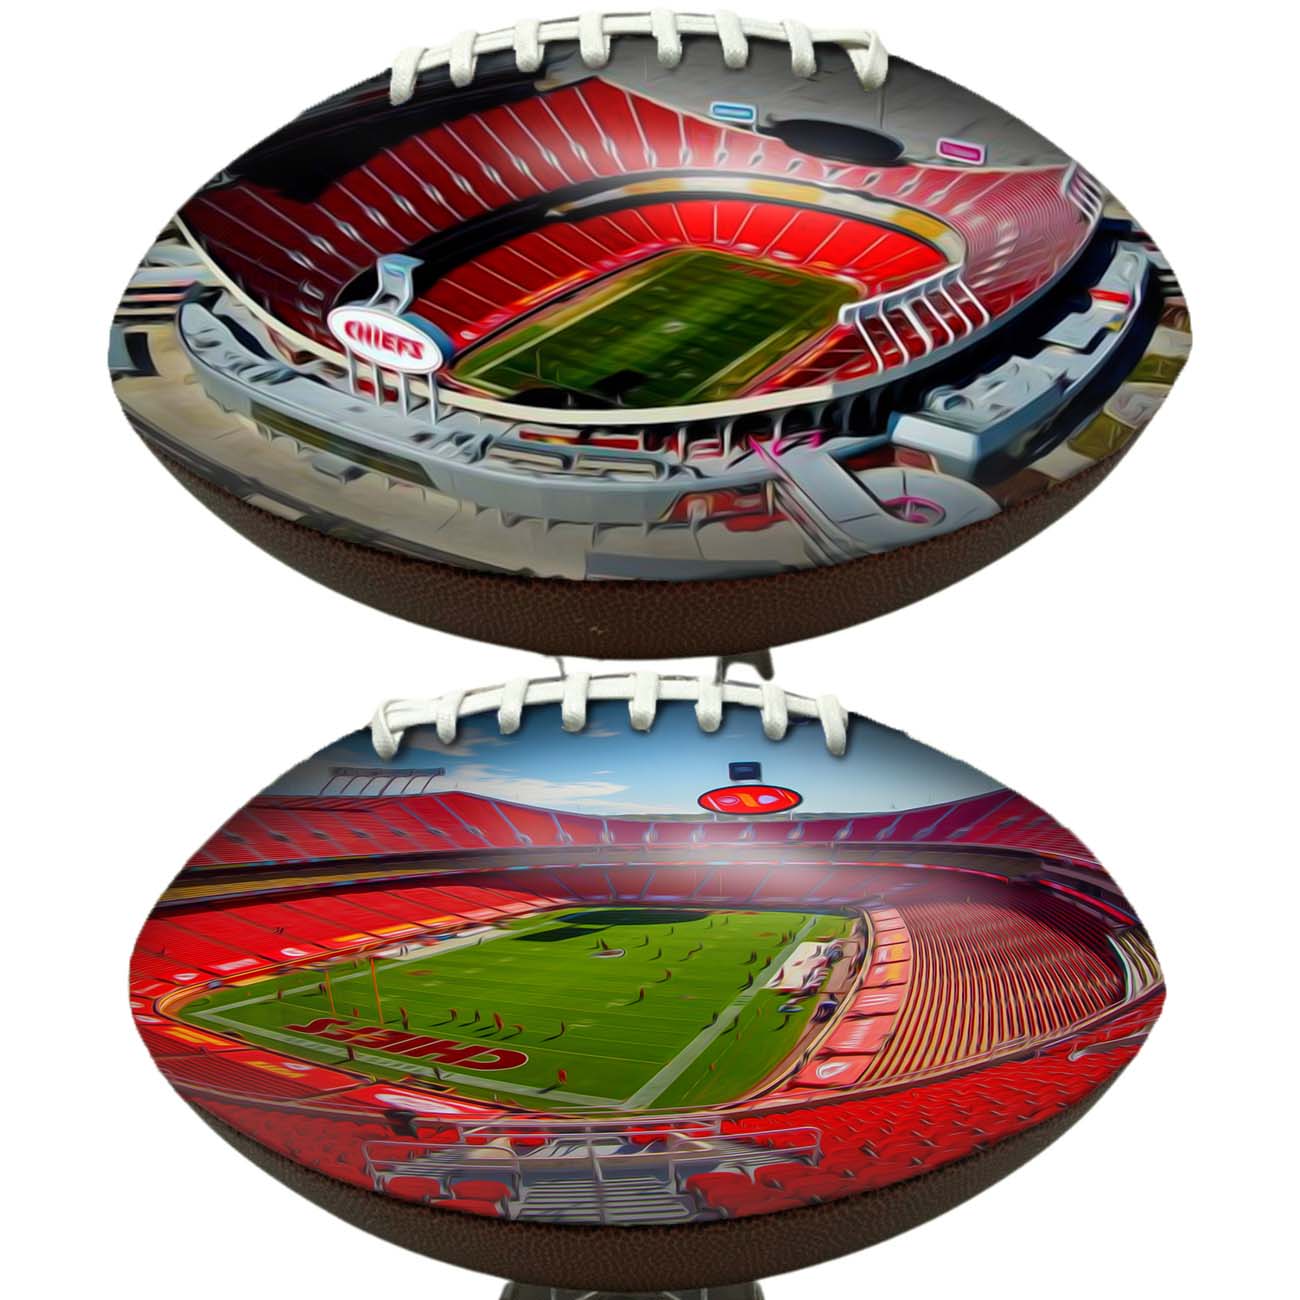 GEHA Field At Arrowhead Stadium Football Digital Painting Series